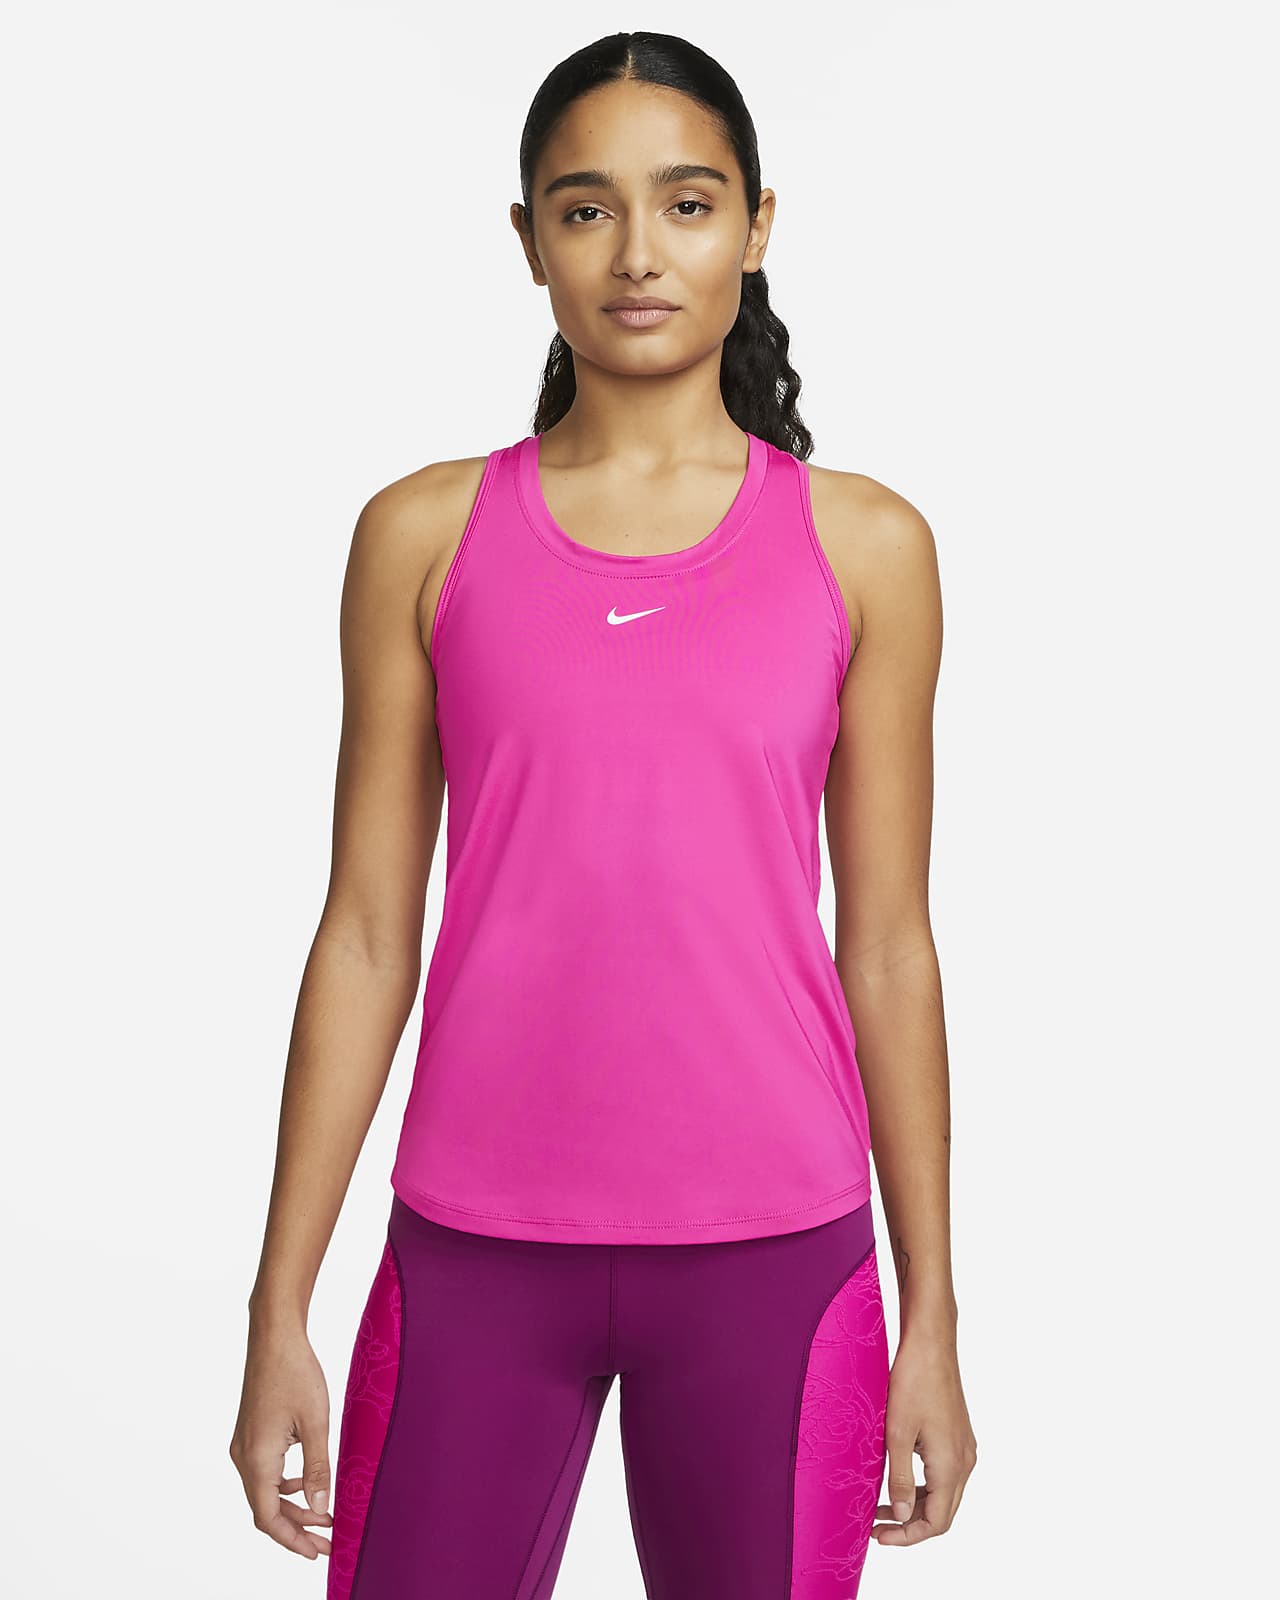 Nike Dri-FIT One Women's Slim Fit Tank